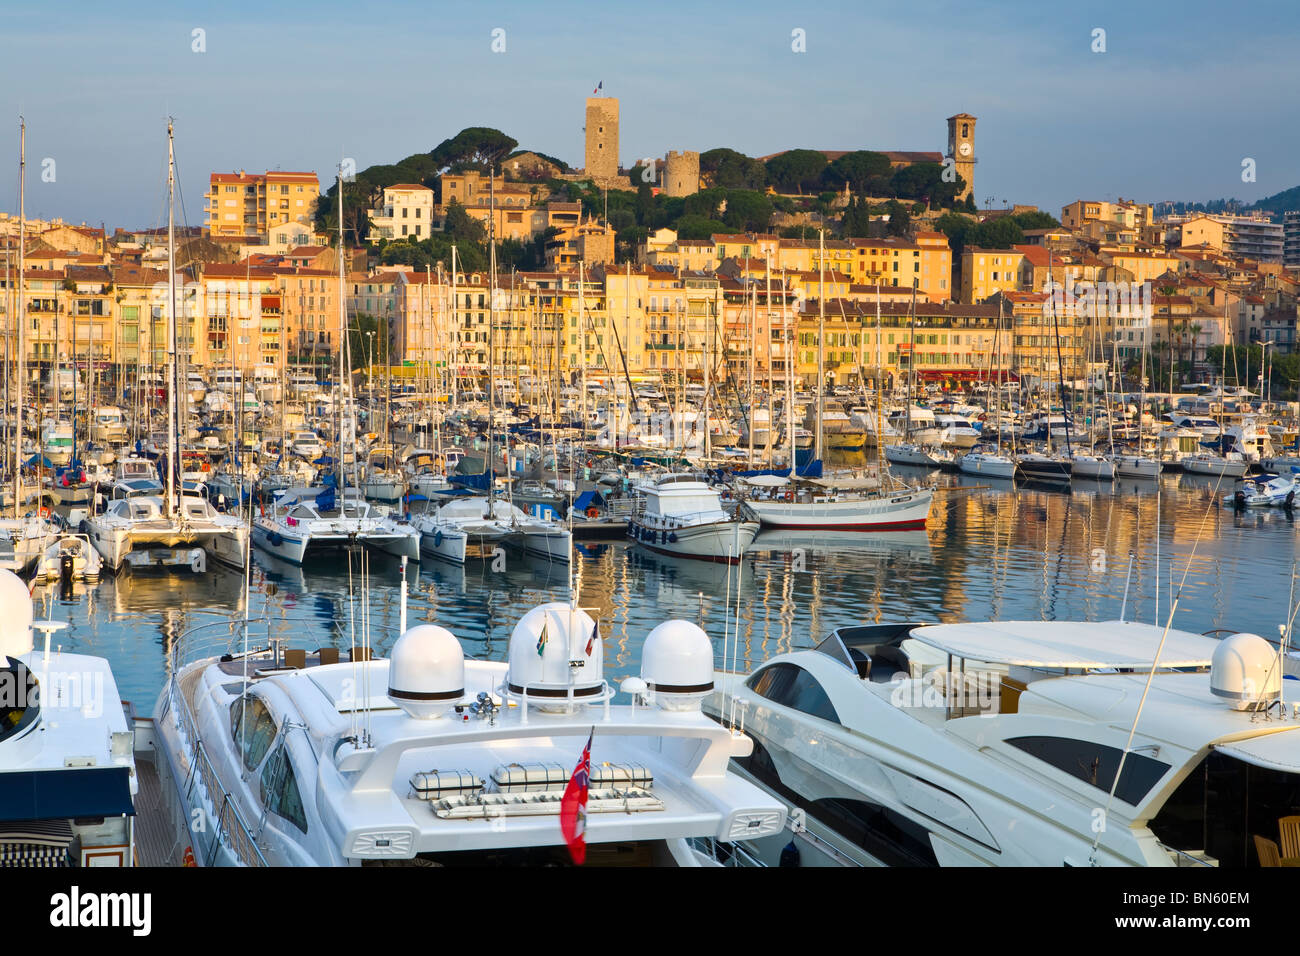 Sunrise over Vieux Port (Old Harbour) and old quarter of Le Suquet, Cannes, Cote d'Azur, France Stock Photo